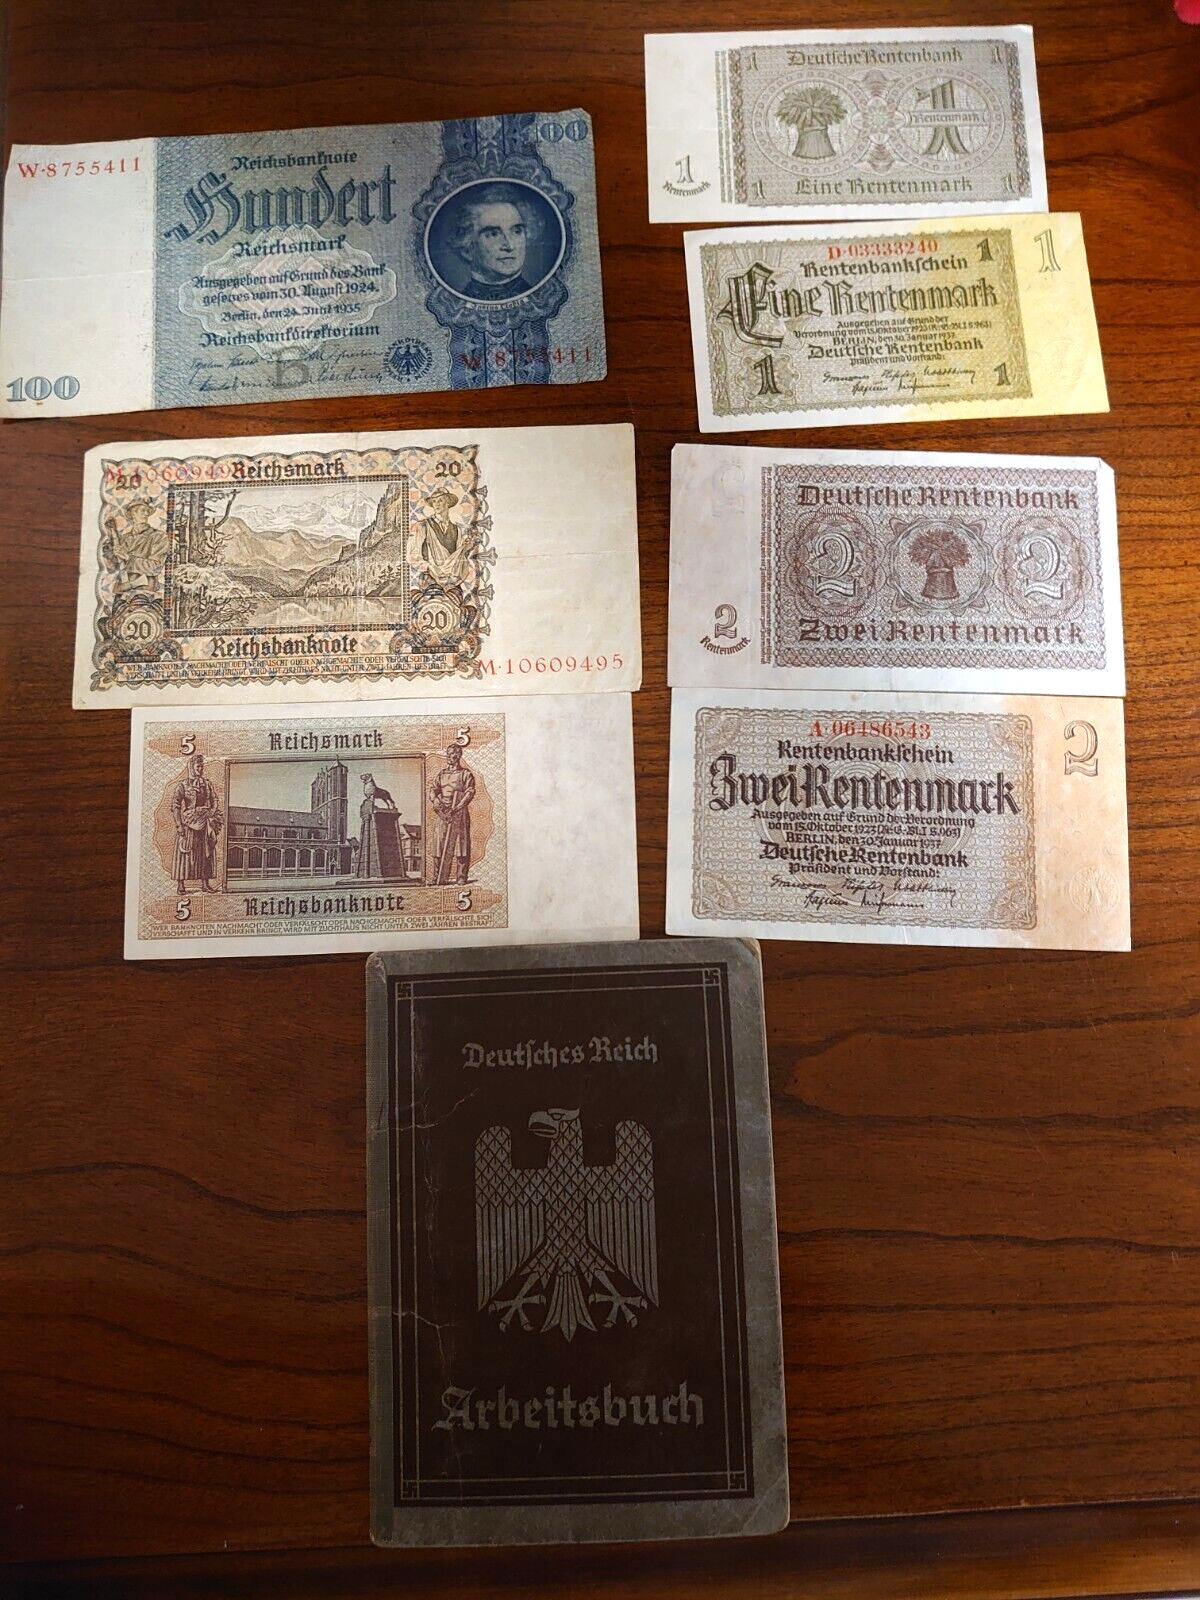 Original ww2 German Deutsches Reich Arbeitsbuch ID book 1,2,5,20,100 Reichsmark